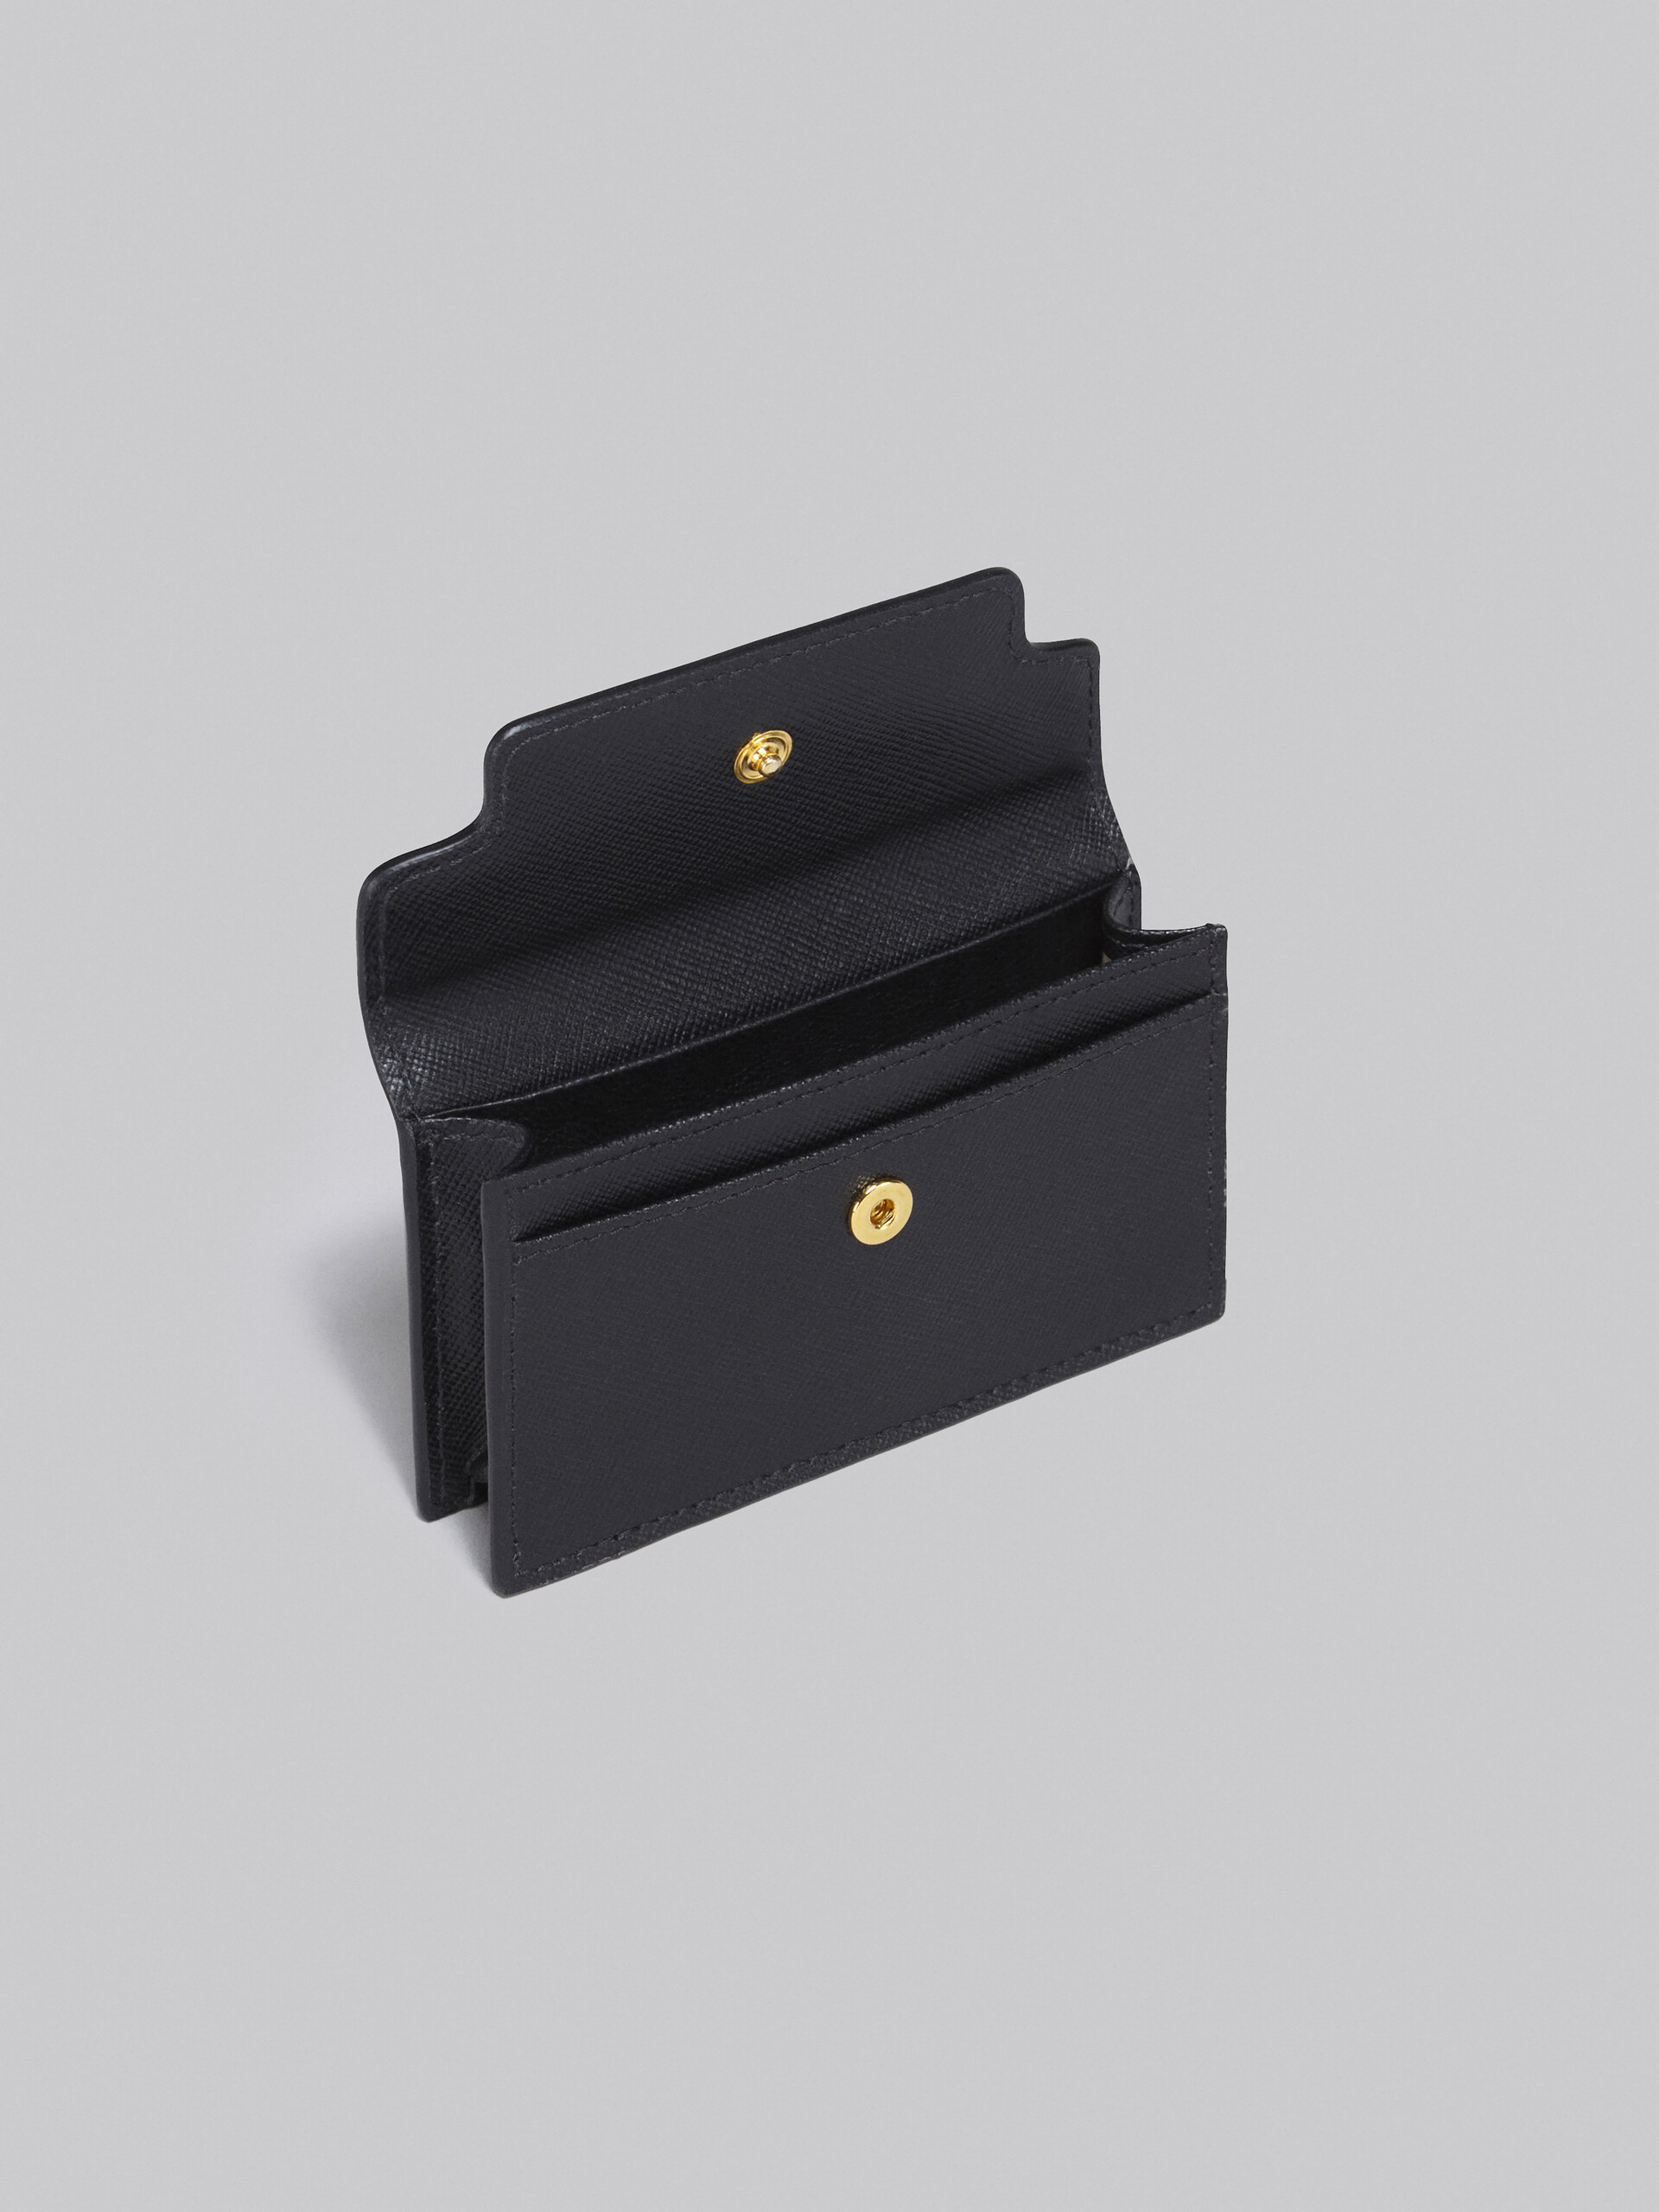 ブラック サフィアーノレザー製 ビジネスカードケース - 財布 - Image 2